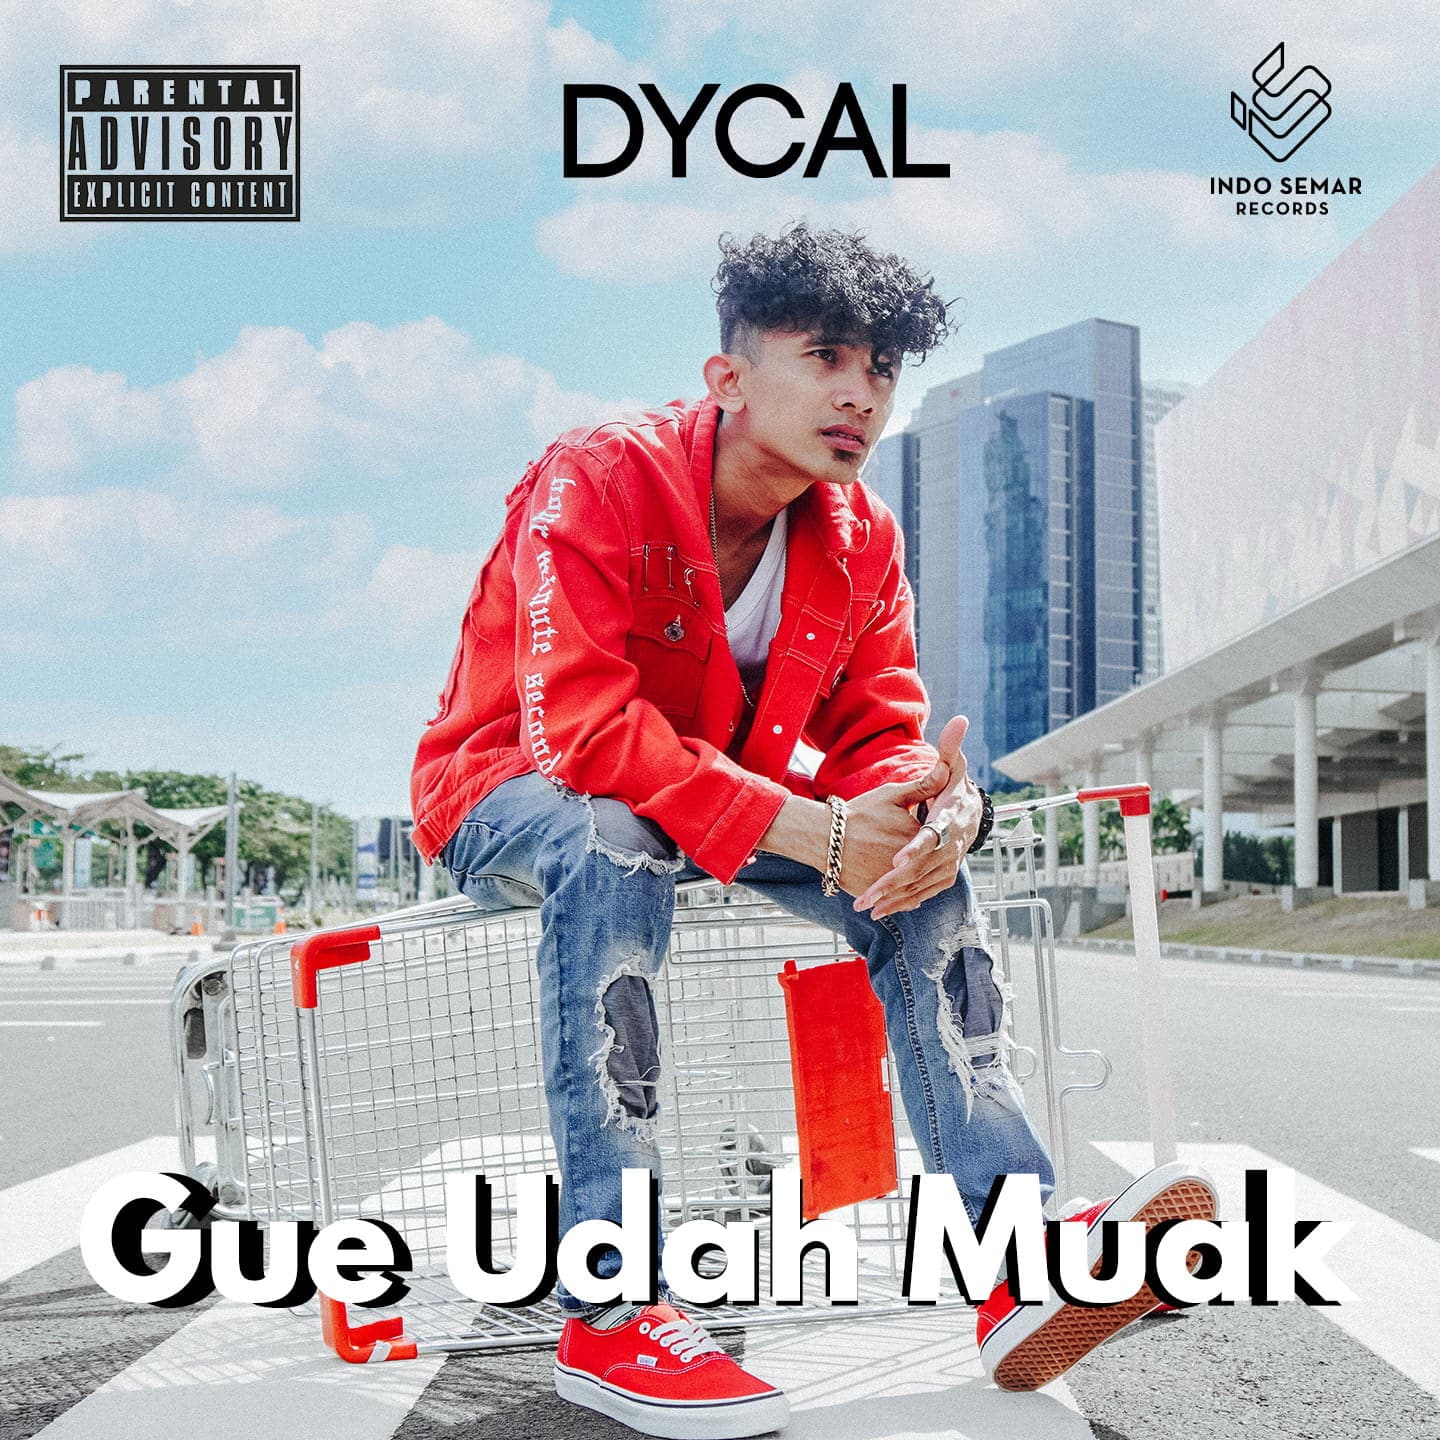 Lirik Lagu Gue Udah Muak - Dycal Siahaan